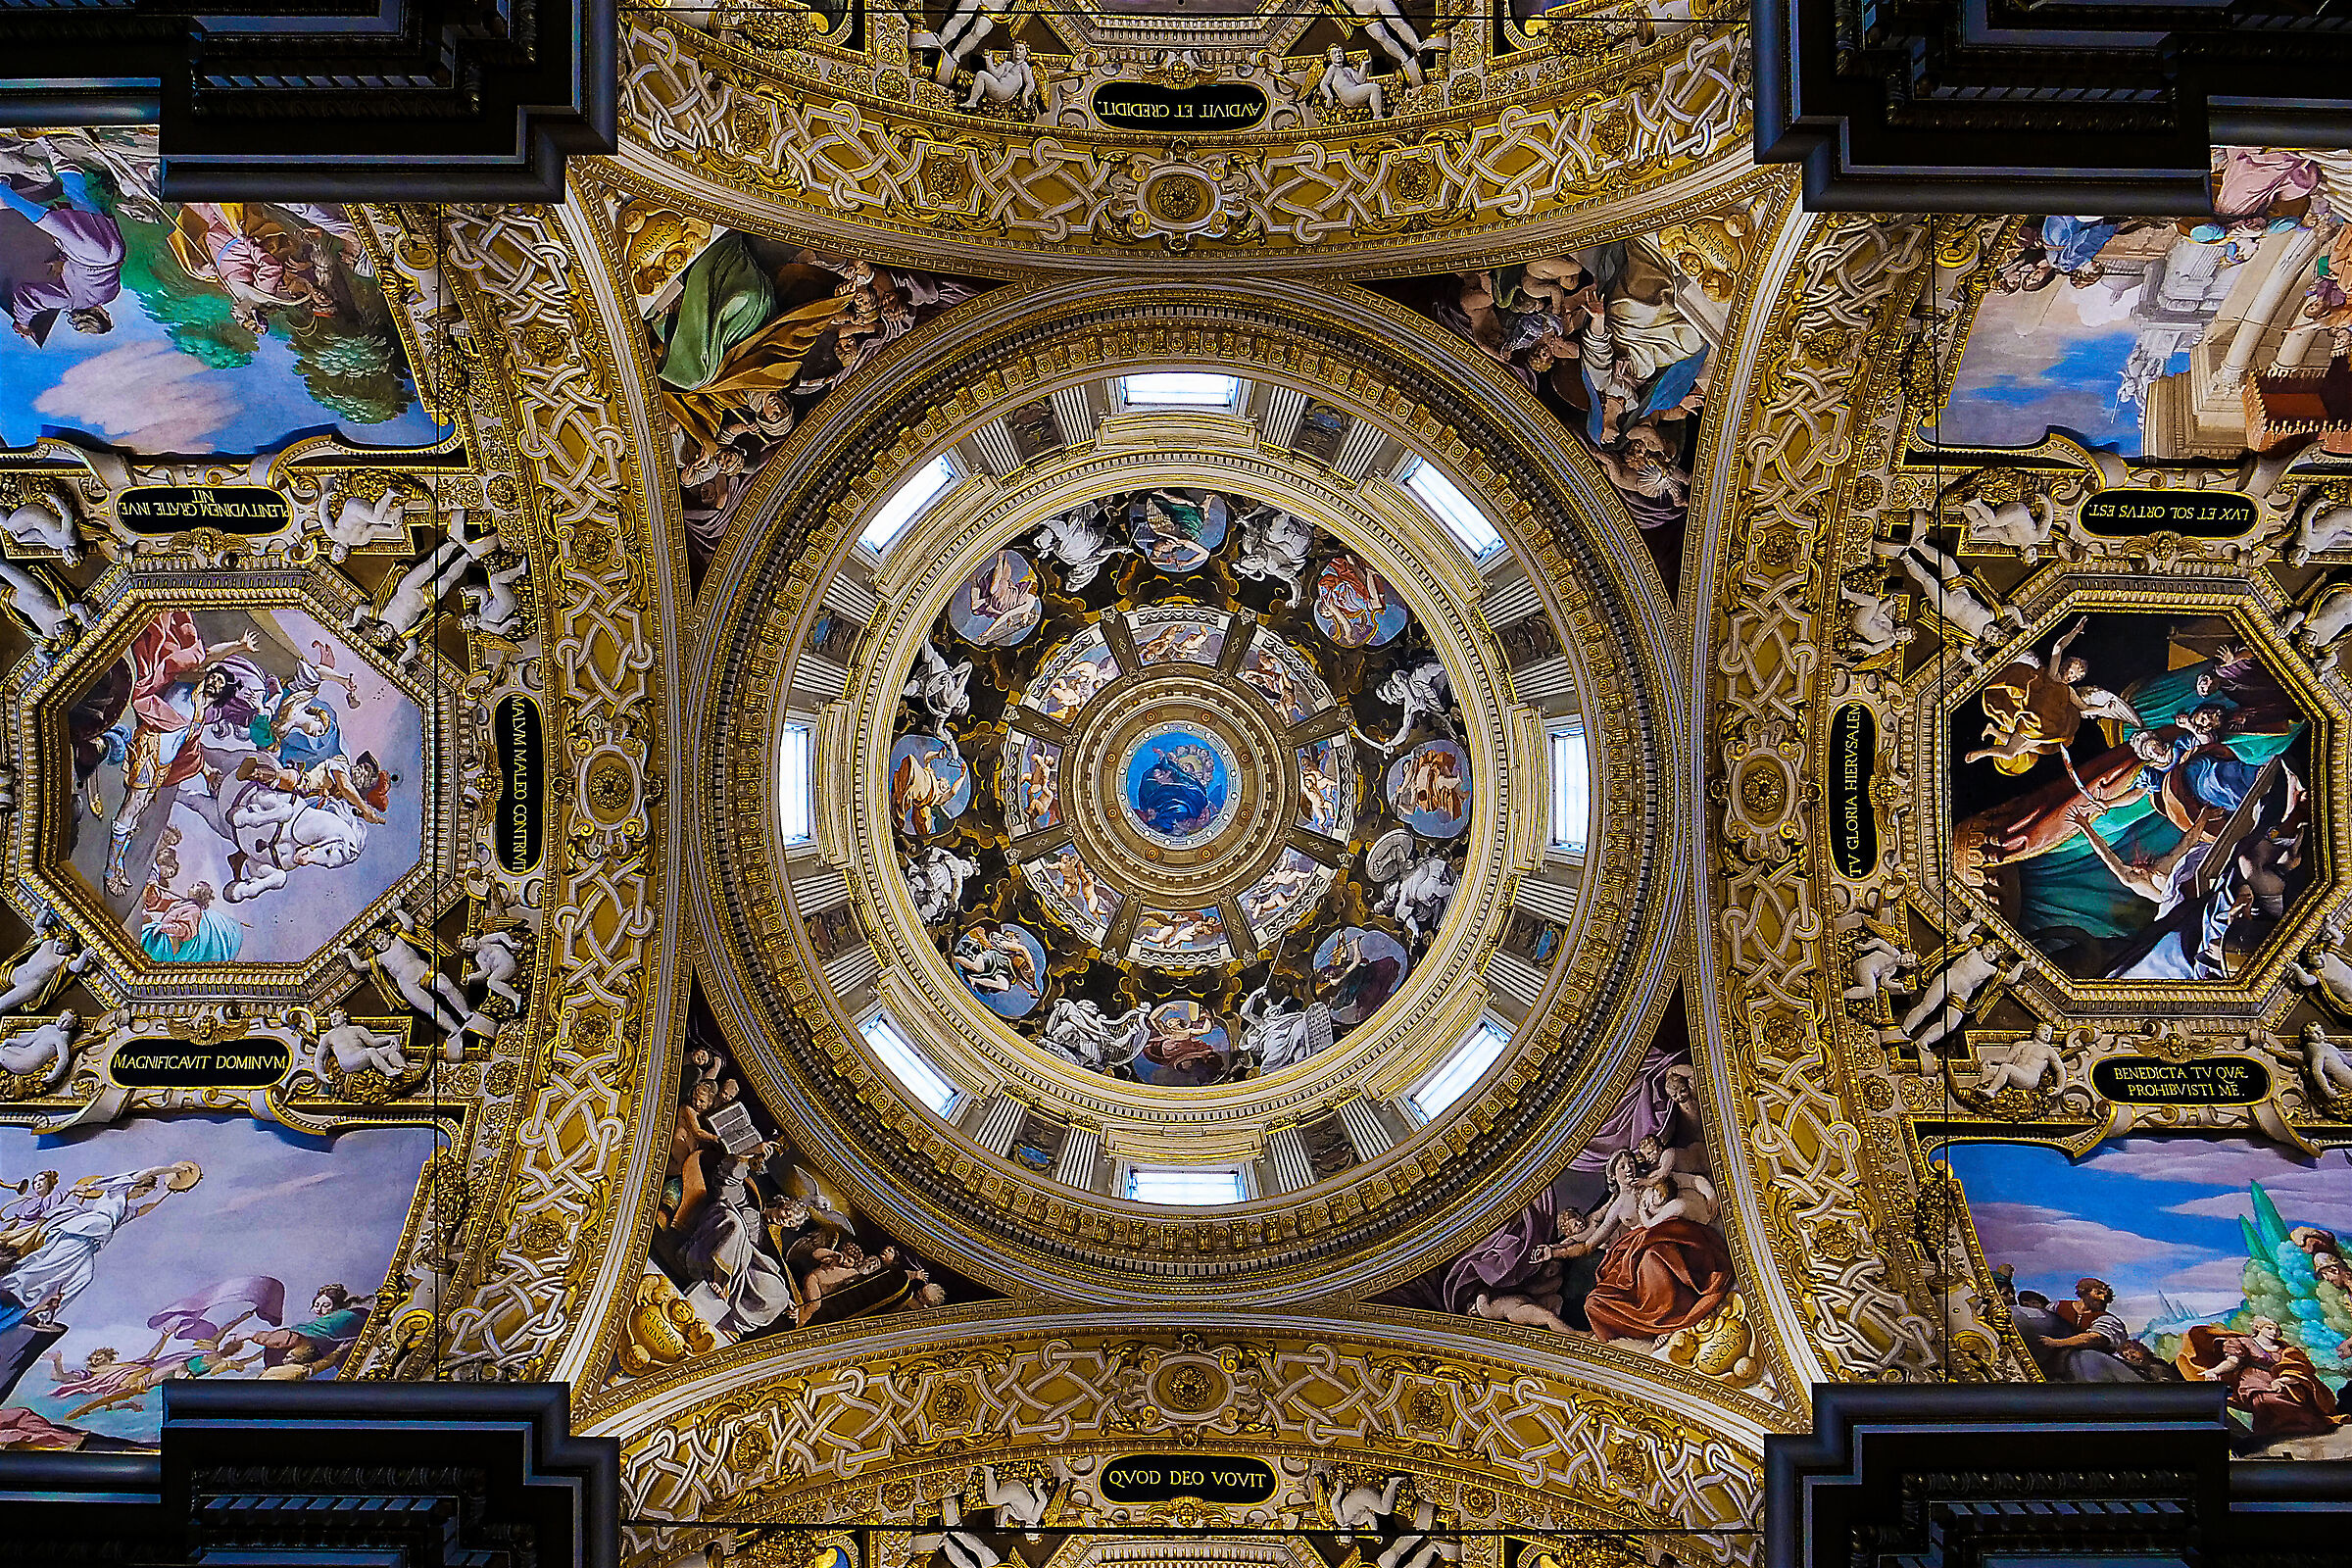  Basilica of Our Lady of Ghiara - Reggio E....